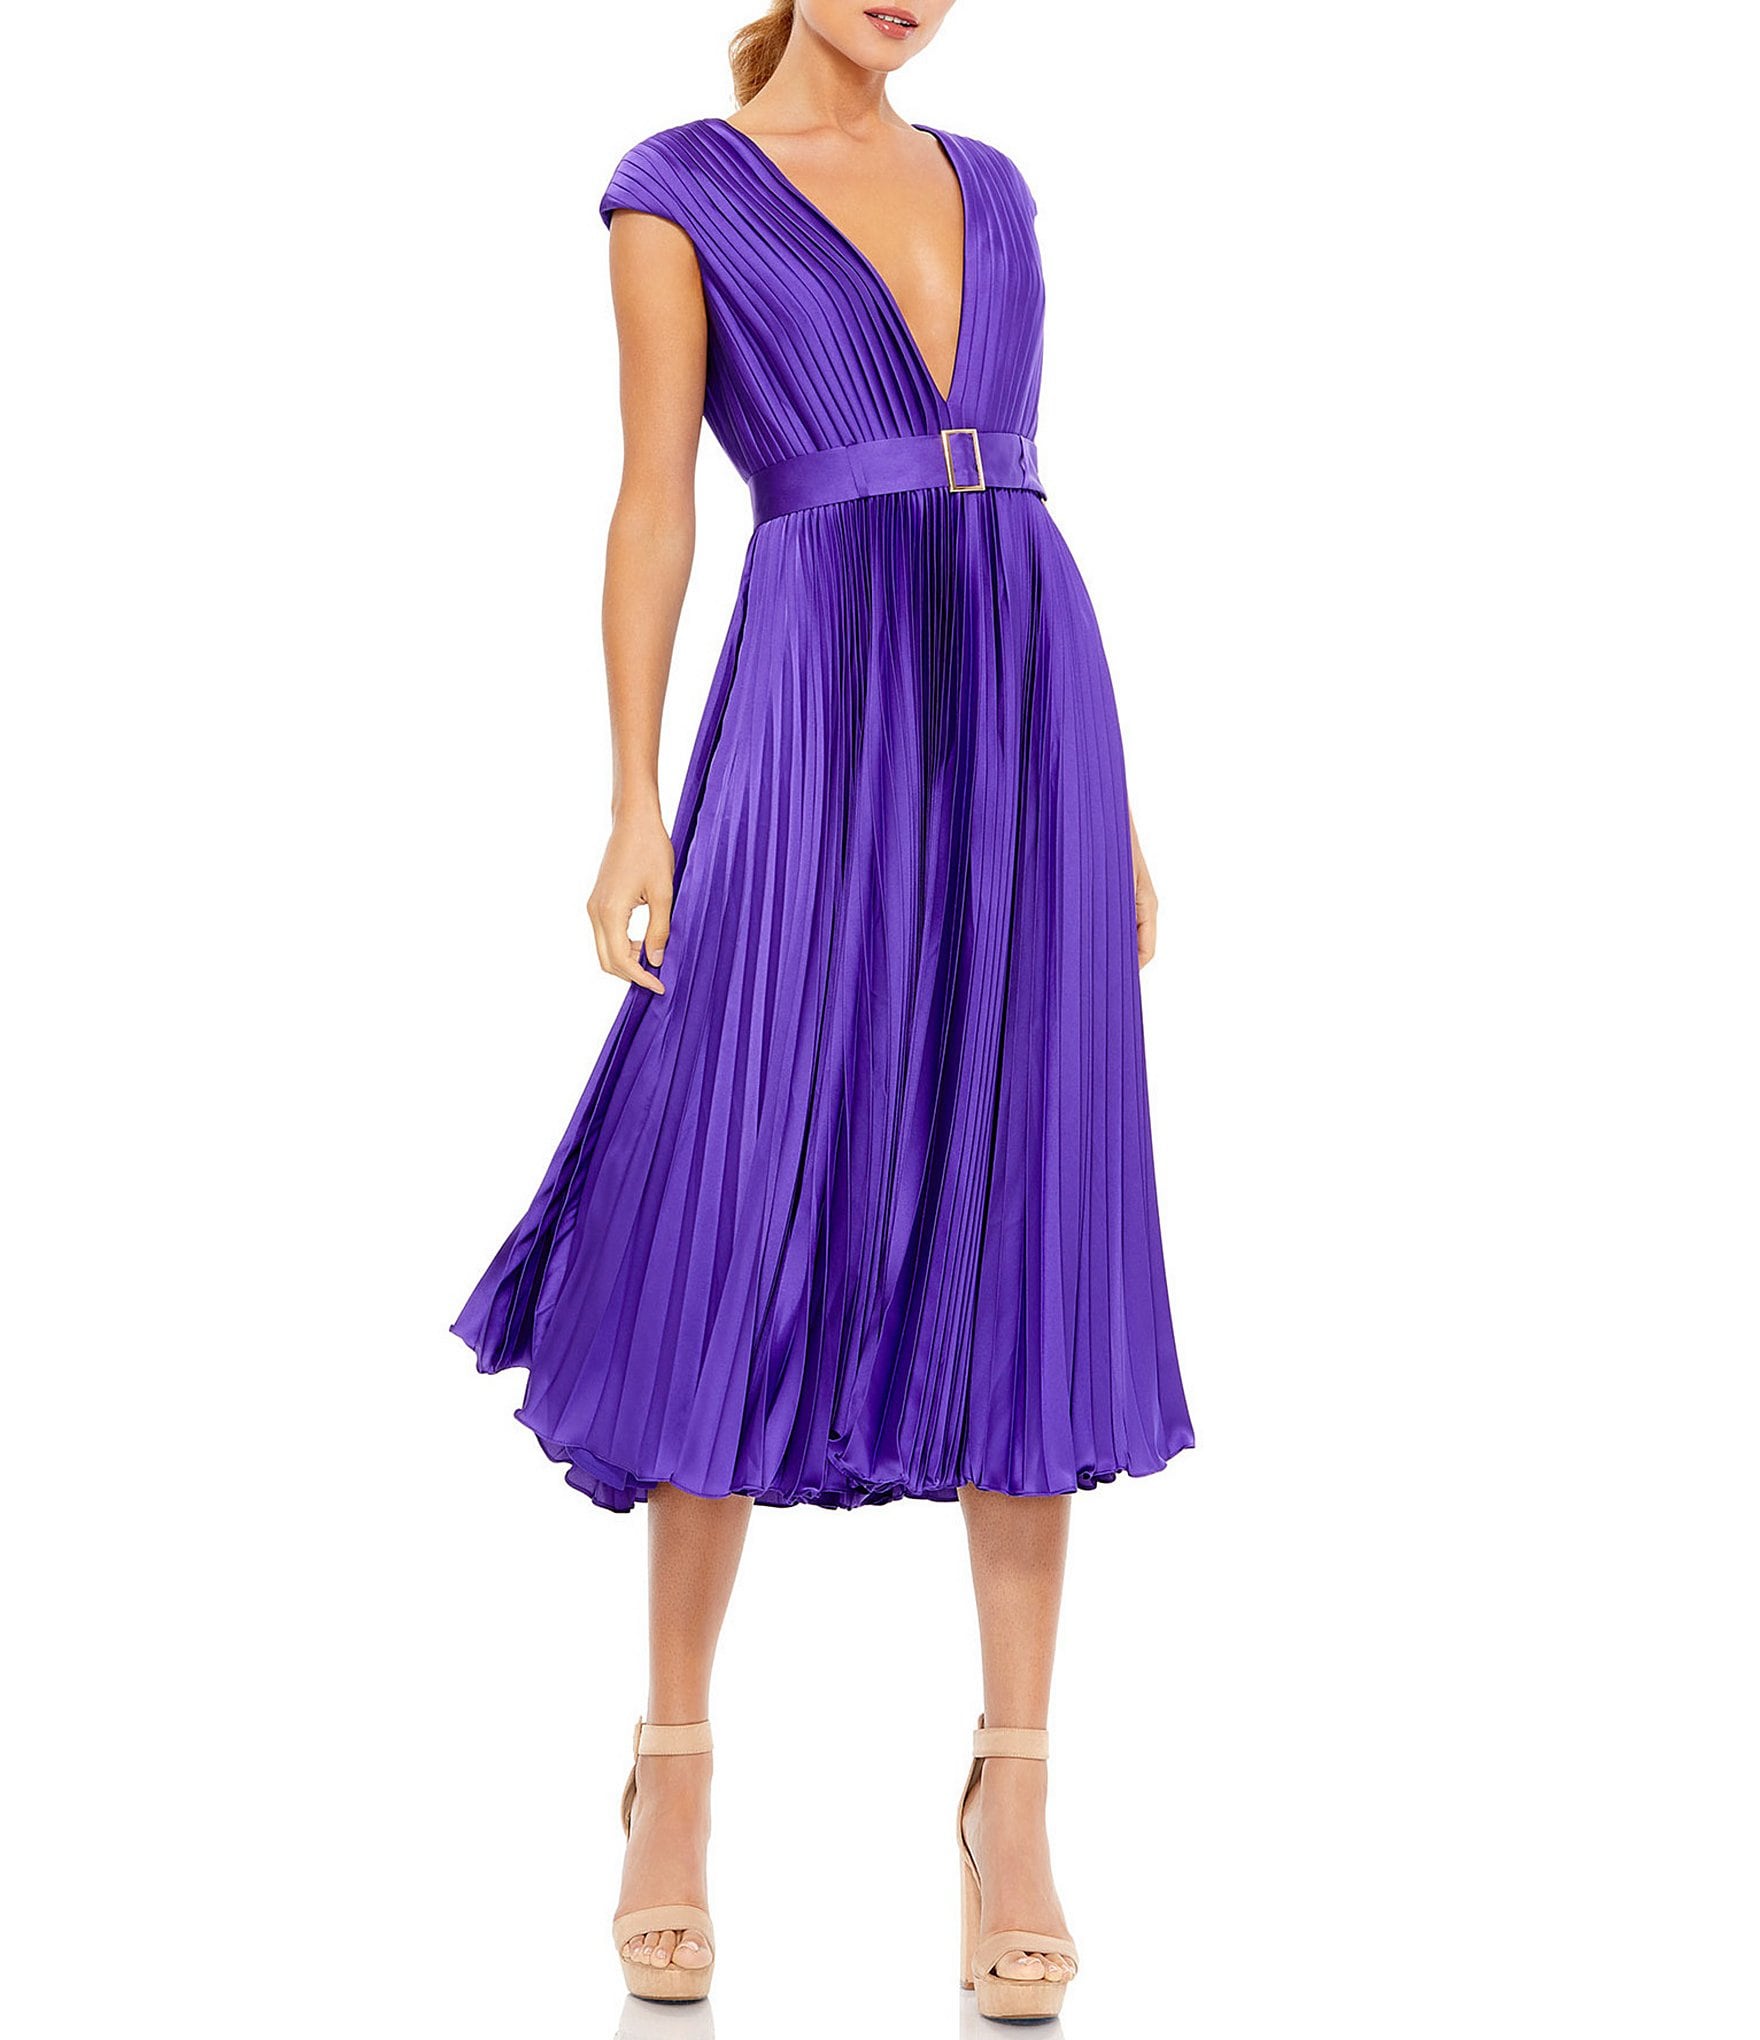 Purple Women's Cocktail ☀ Party Dresses ...